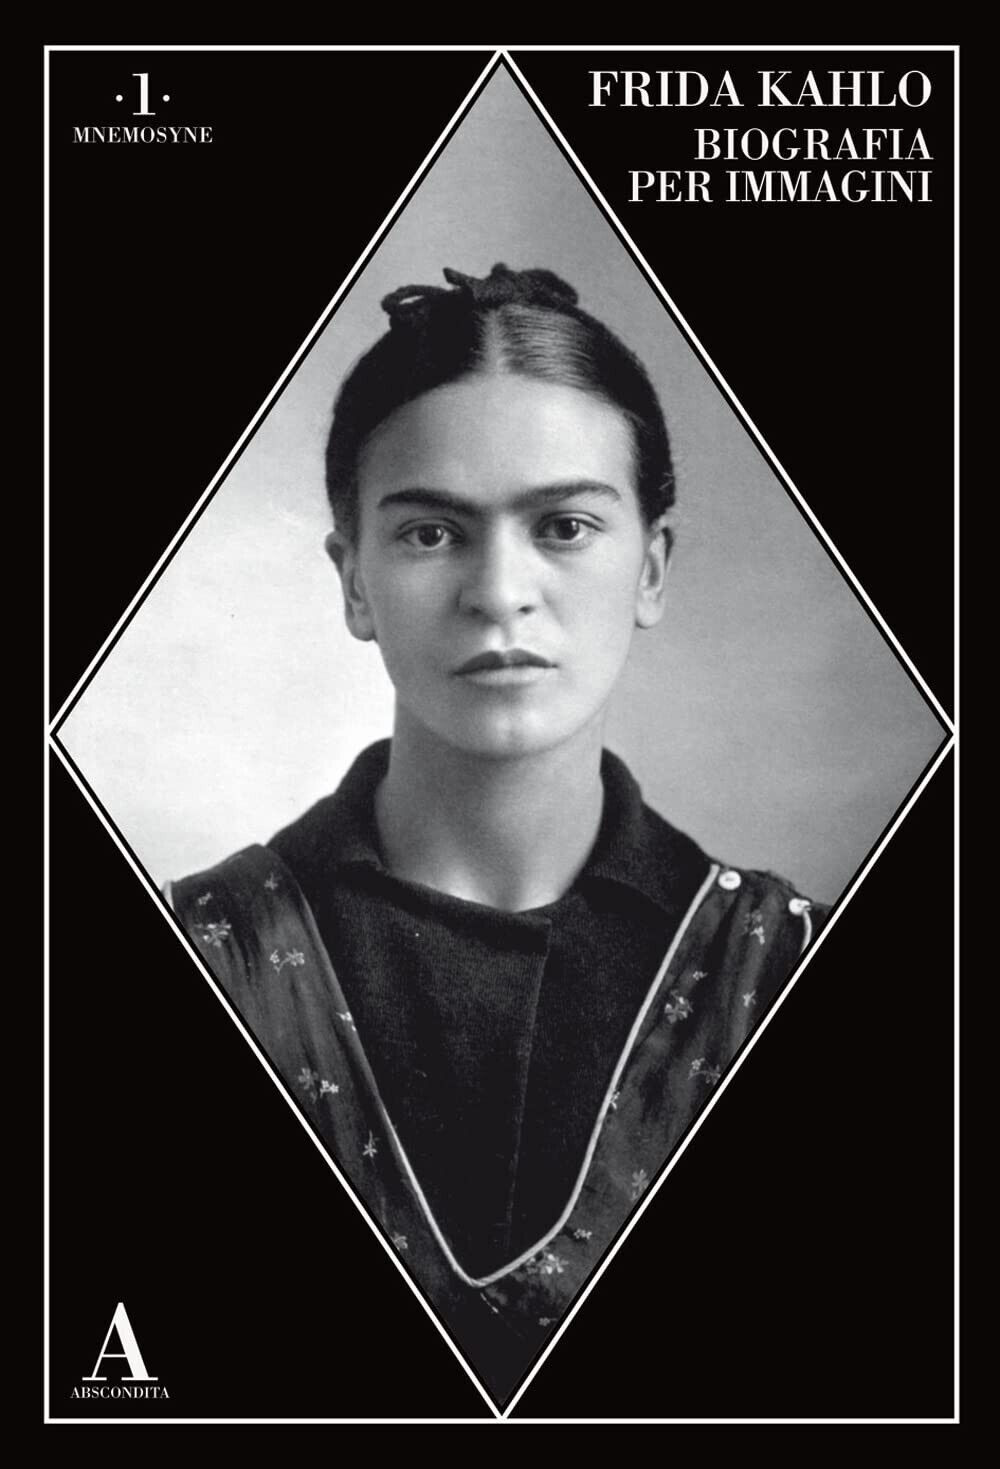 Frida Kahlo. Biografia per immagini - AA.VV. - Abscondita, 2023 libro usato